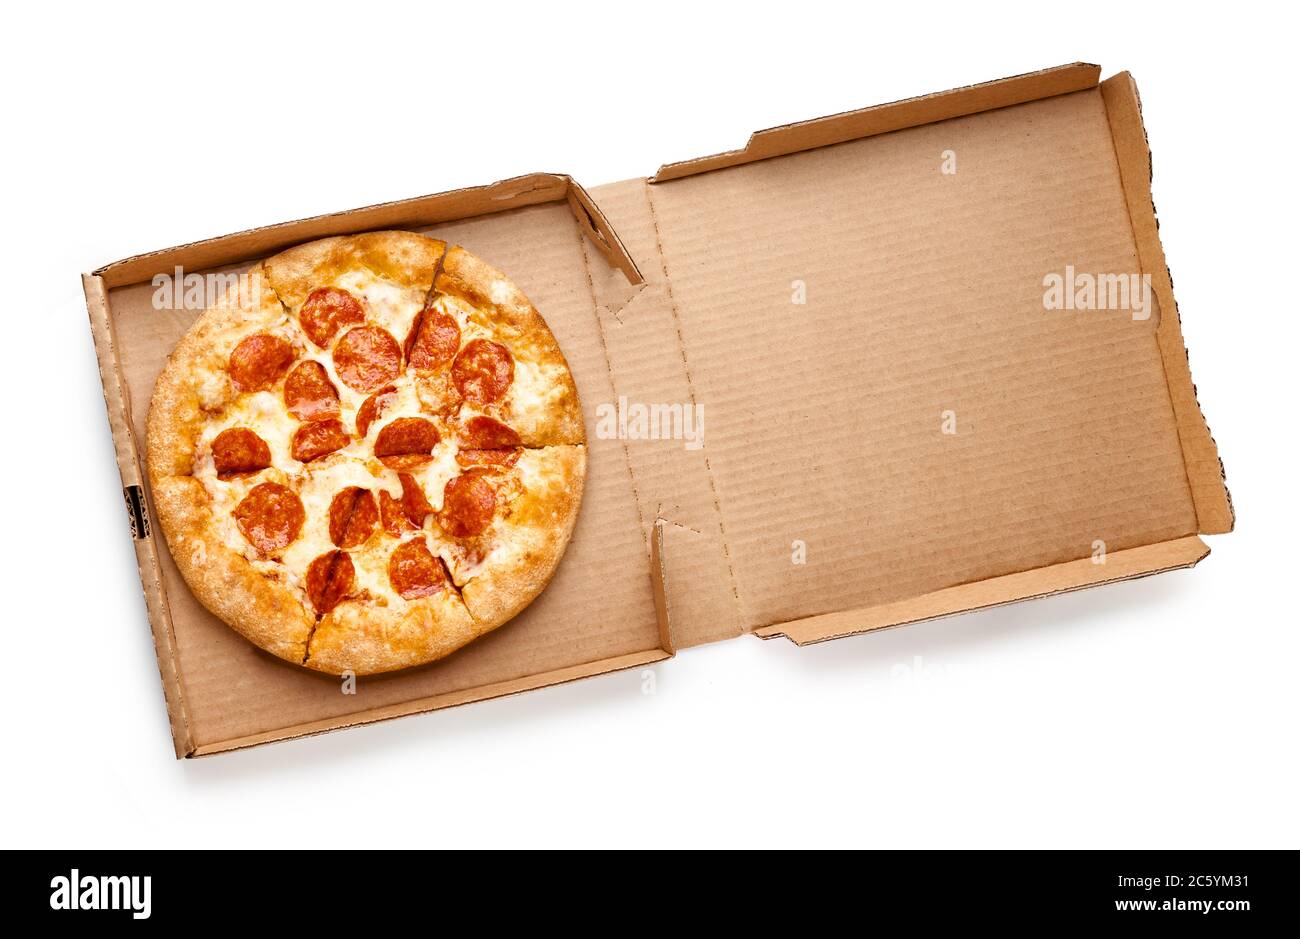 Pizza dans une boîte en carton isolée sur fond blanc. Vue de dessus du forfait pizza. Banque D'Images